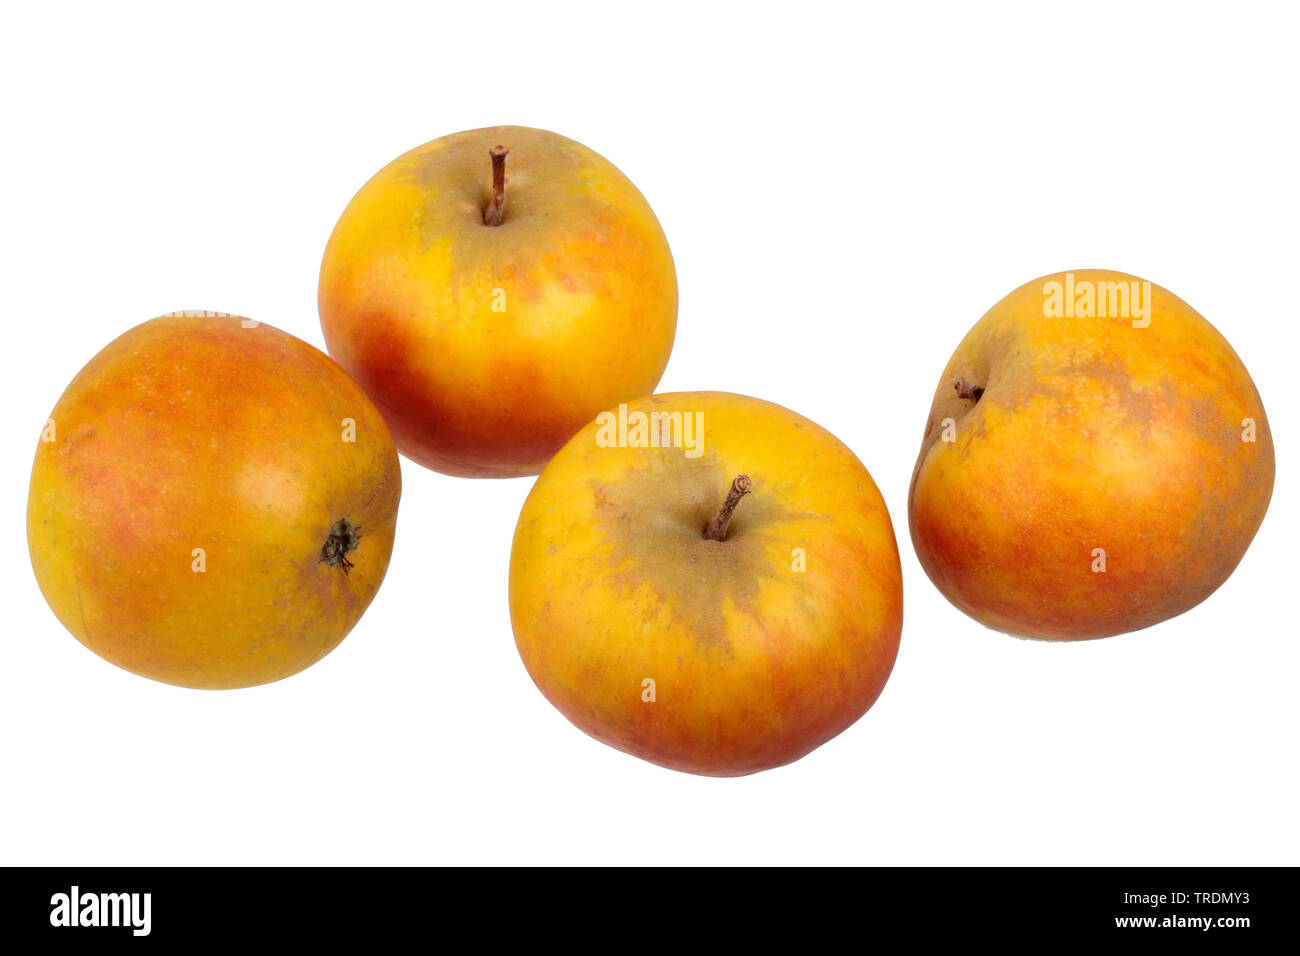 apple (Malus domestica 'Holsteiner Cox', Malus domestica Holsteiner Cox), apples of the cultivar Holsteiner Cox Stock Photo